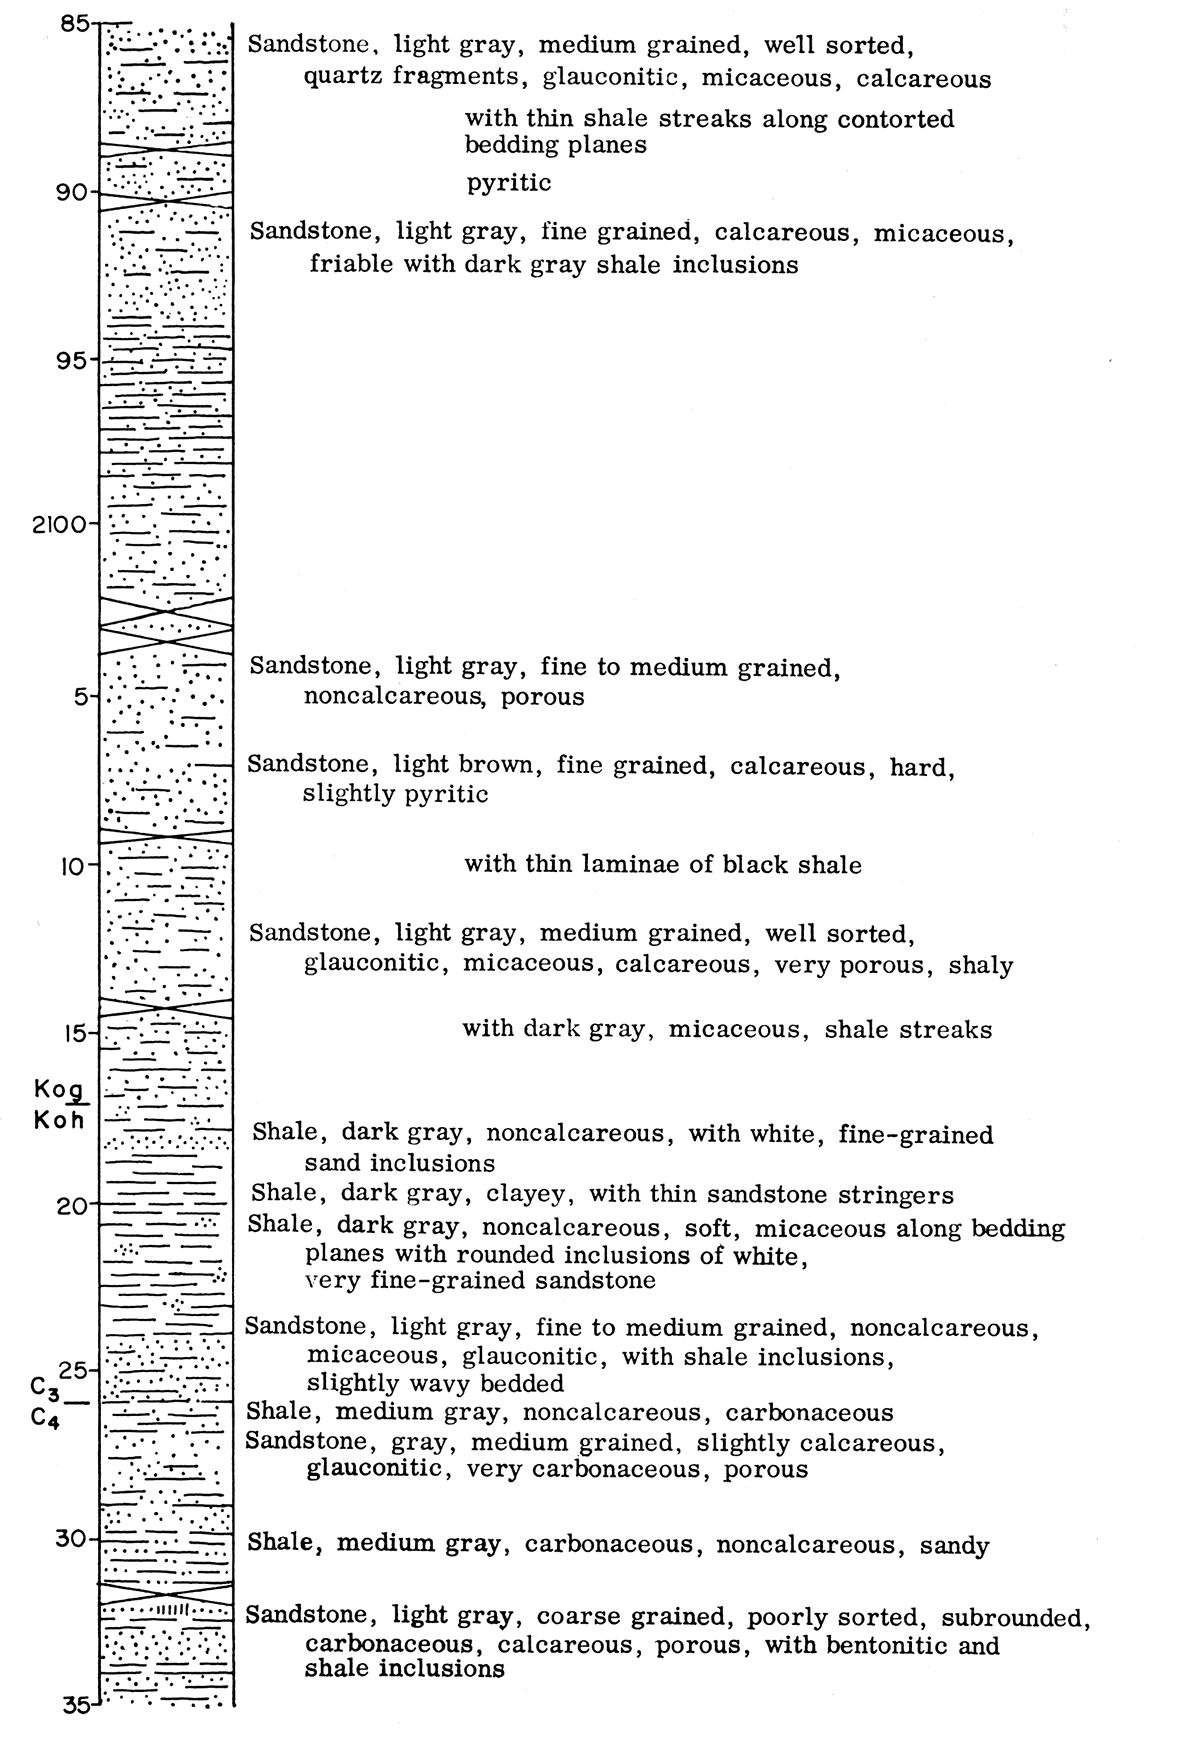 Graphic description of Dakota (Cretaceous) core.